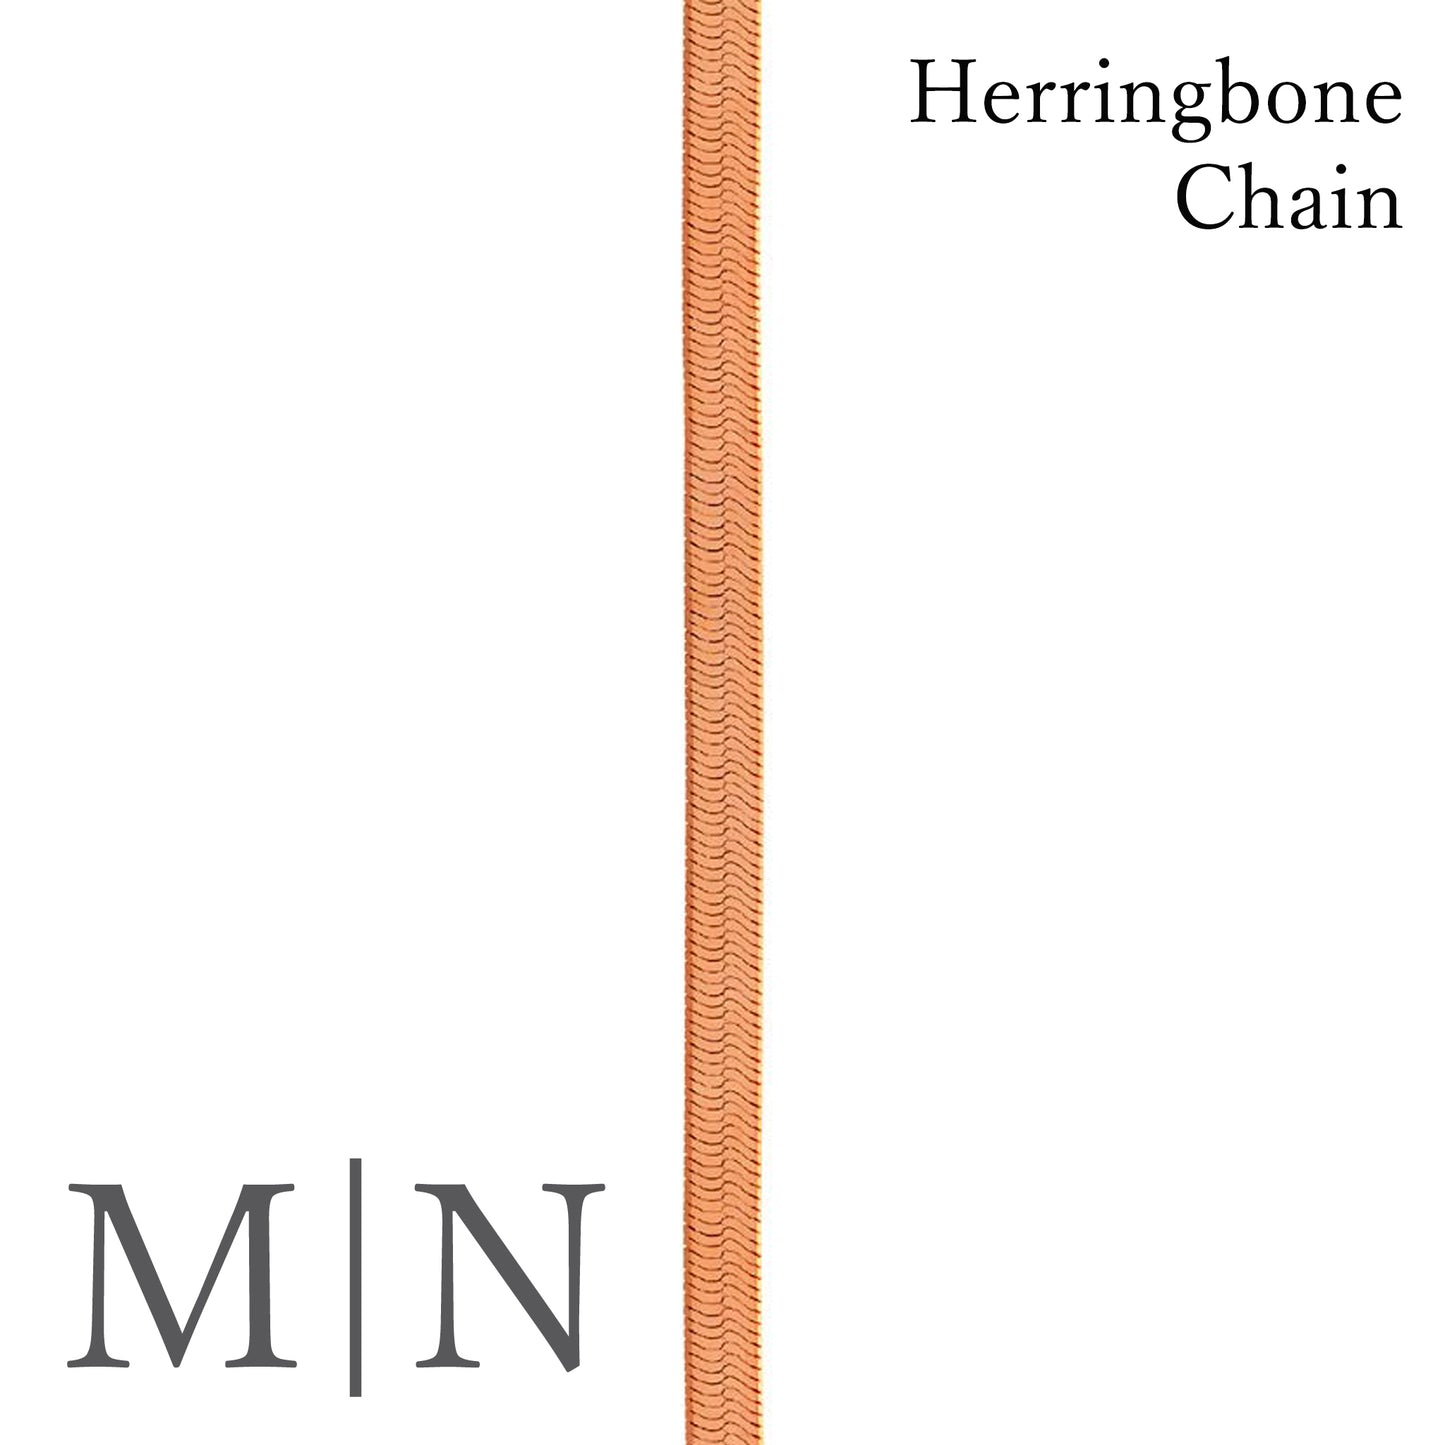 Herringbone Chains